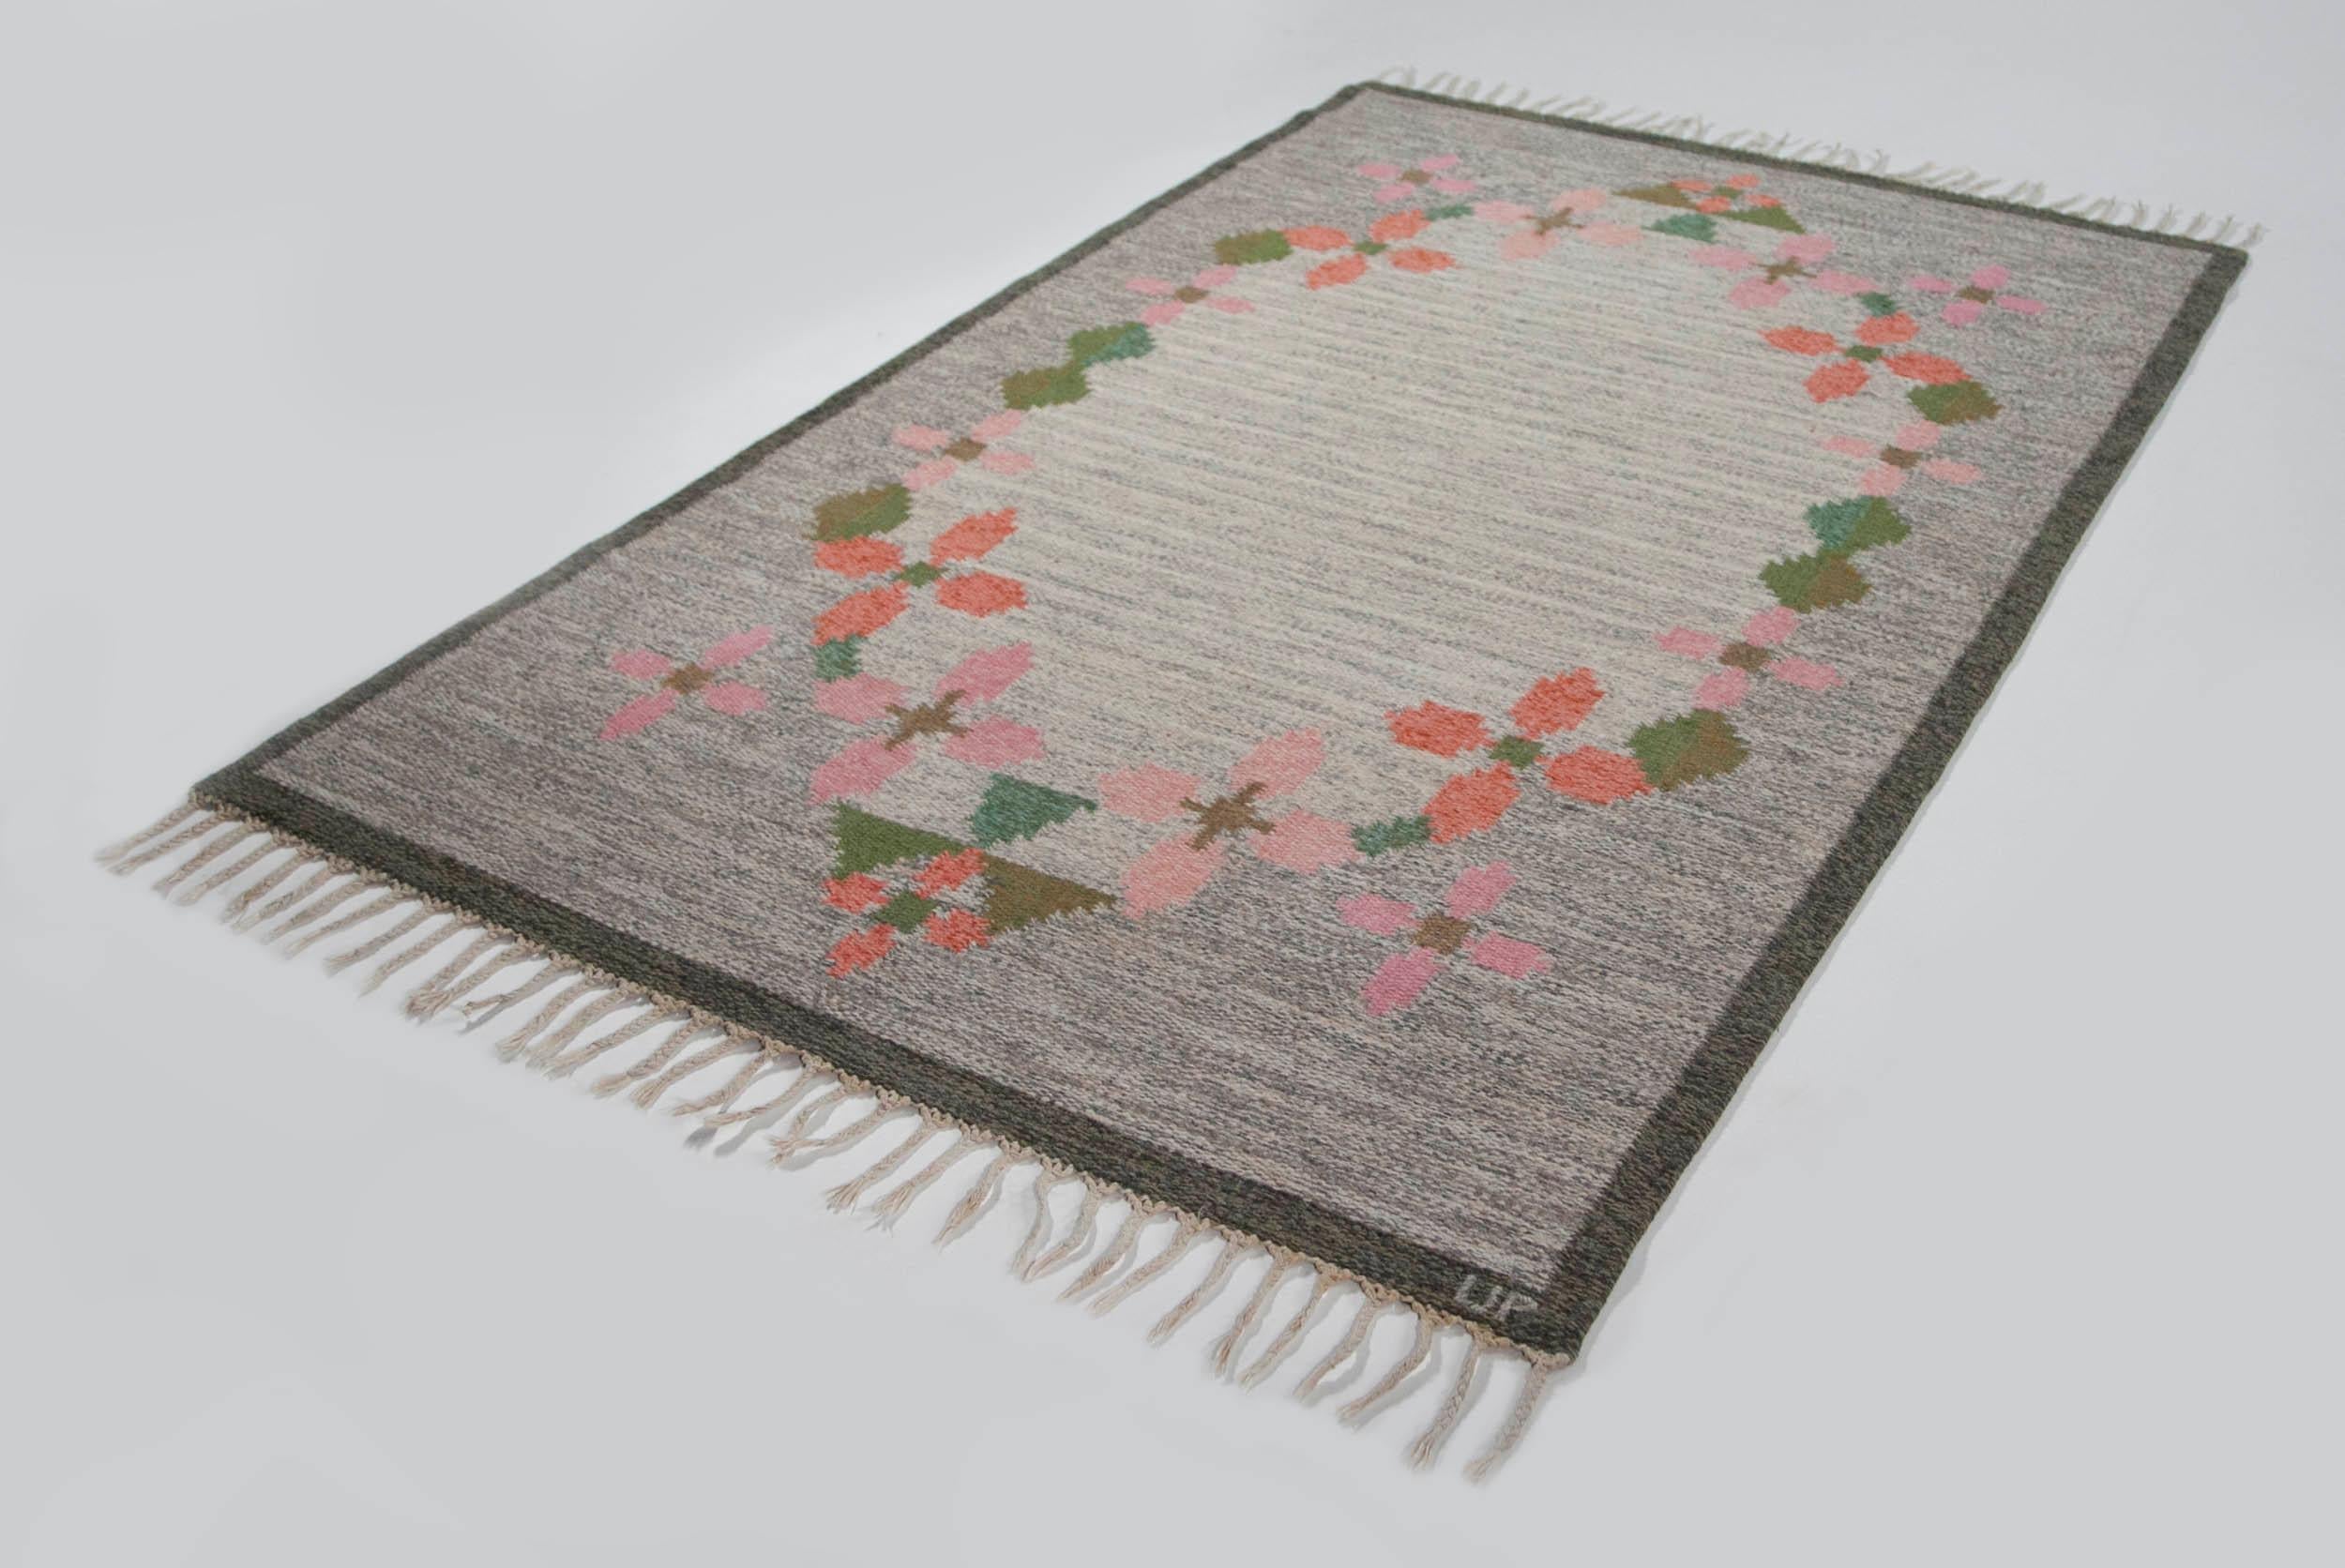 Scandinavian Modern Ulla Parkdah Swedish Flat-Weave Rug, Signed UP, Sweden, 1960s For Sale